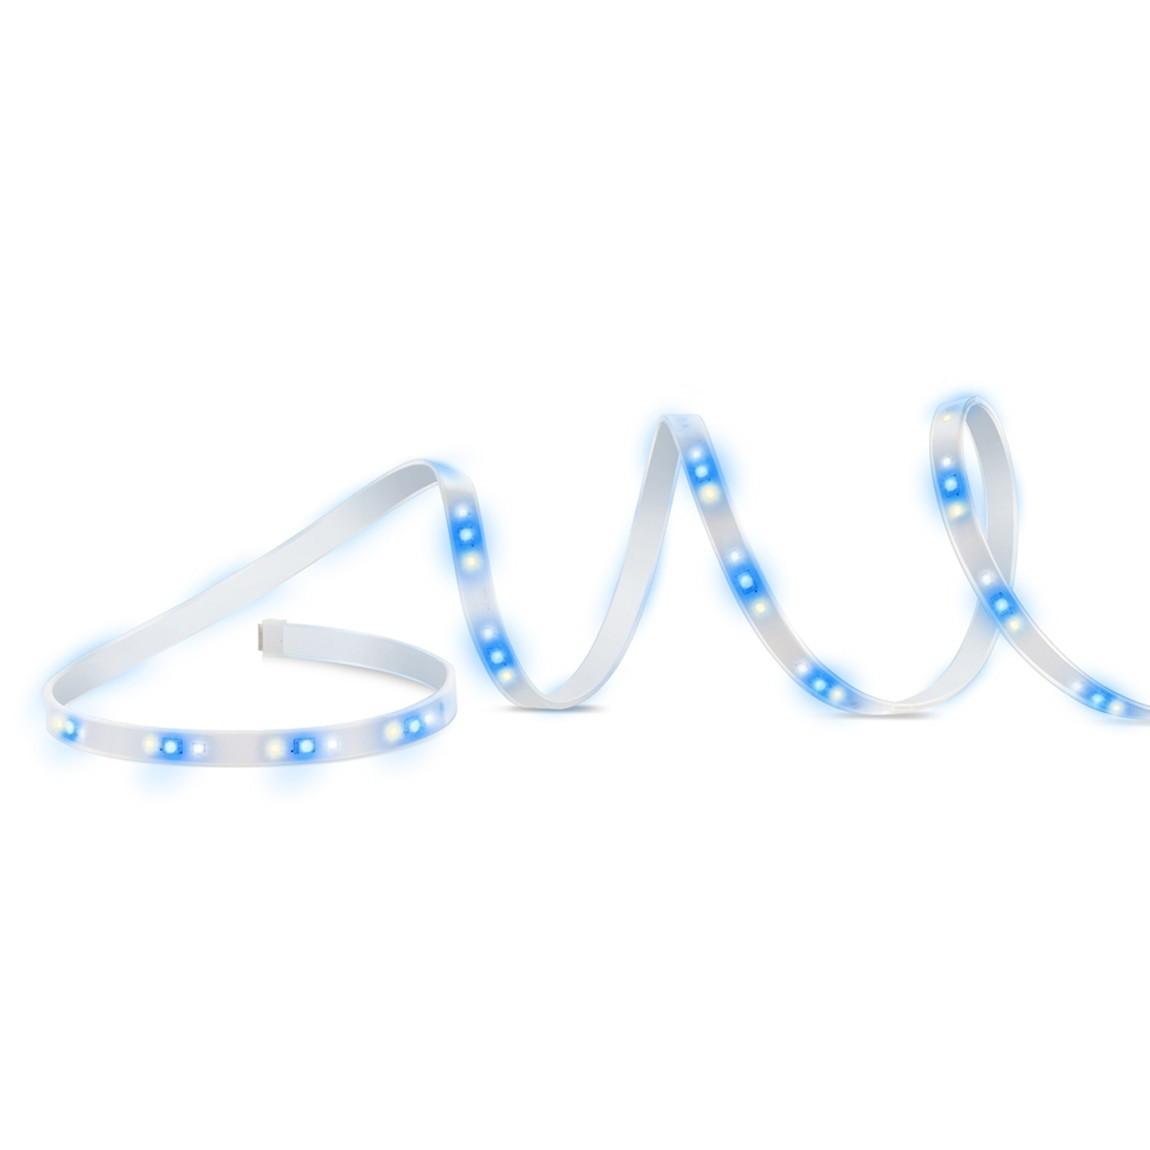 Eve Light Strip Erweiterung - LED Streifen